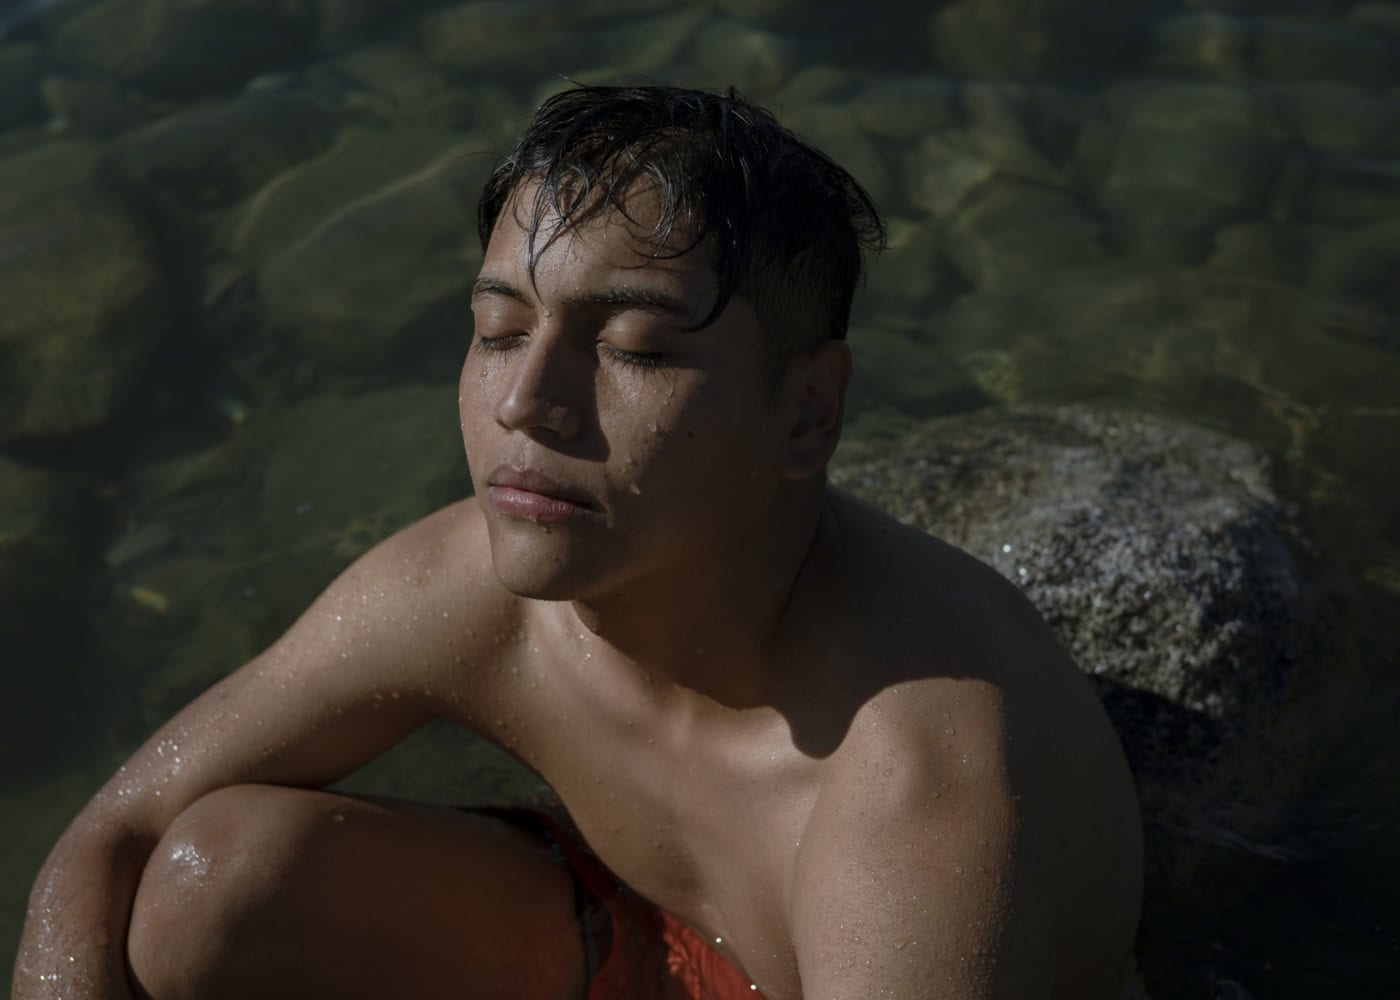 Ein junger Mann sitzt mit geschlossenen Augen in einem klaren, flachen Wasser, das von Felsen umgeben ist. Er trägt rote Badebekleidung und hat nasses Haar, während Sonnenlicht auf sein Gesicht scheint, wodurch er einen entspannten und friedlichen Ausdruck hat.